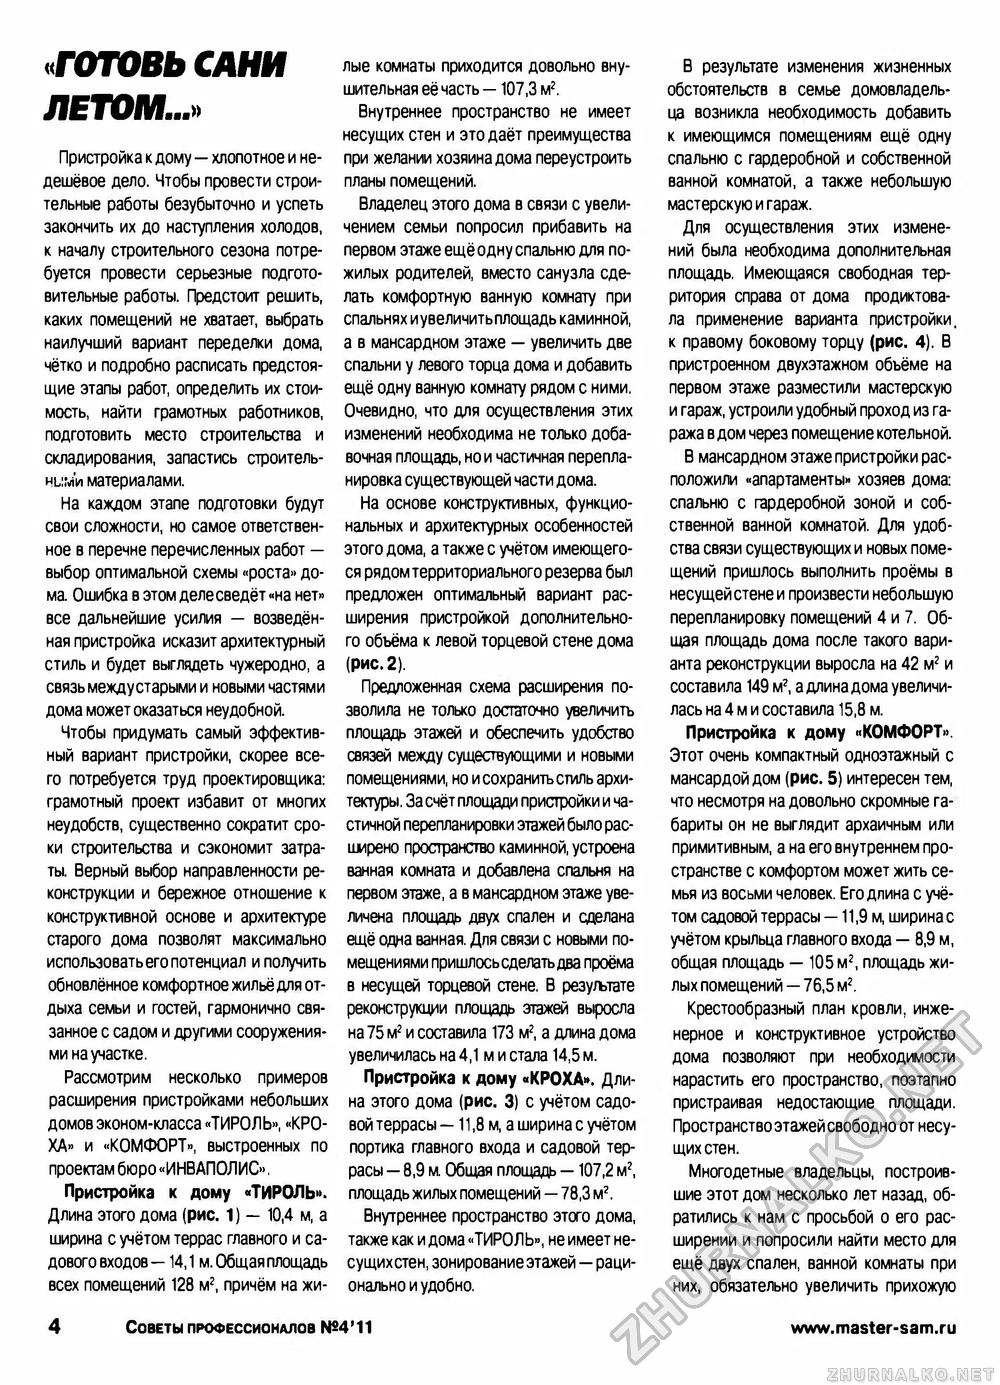 Советы профессионалов 2011-04, страница 4